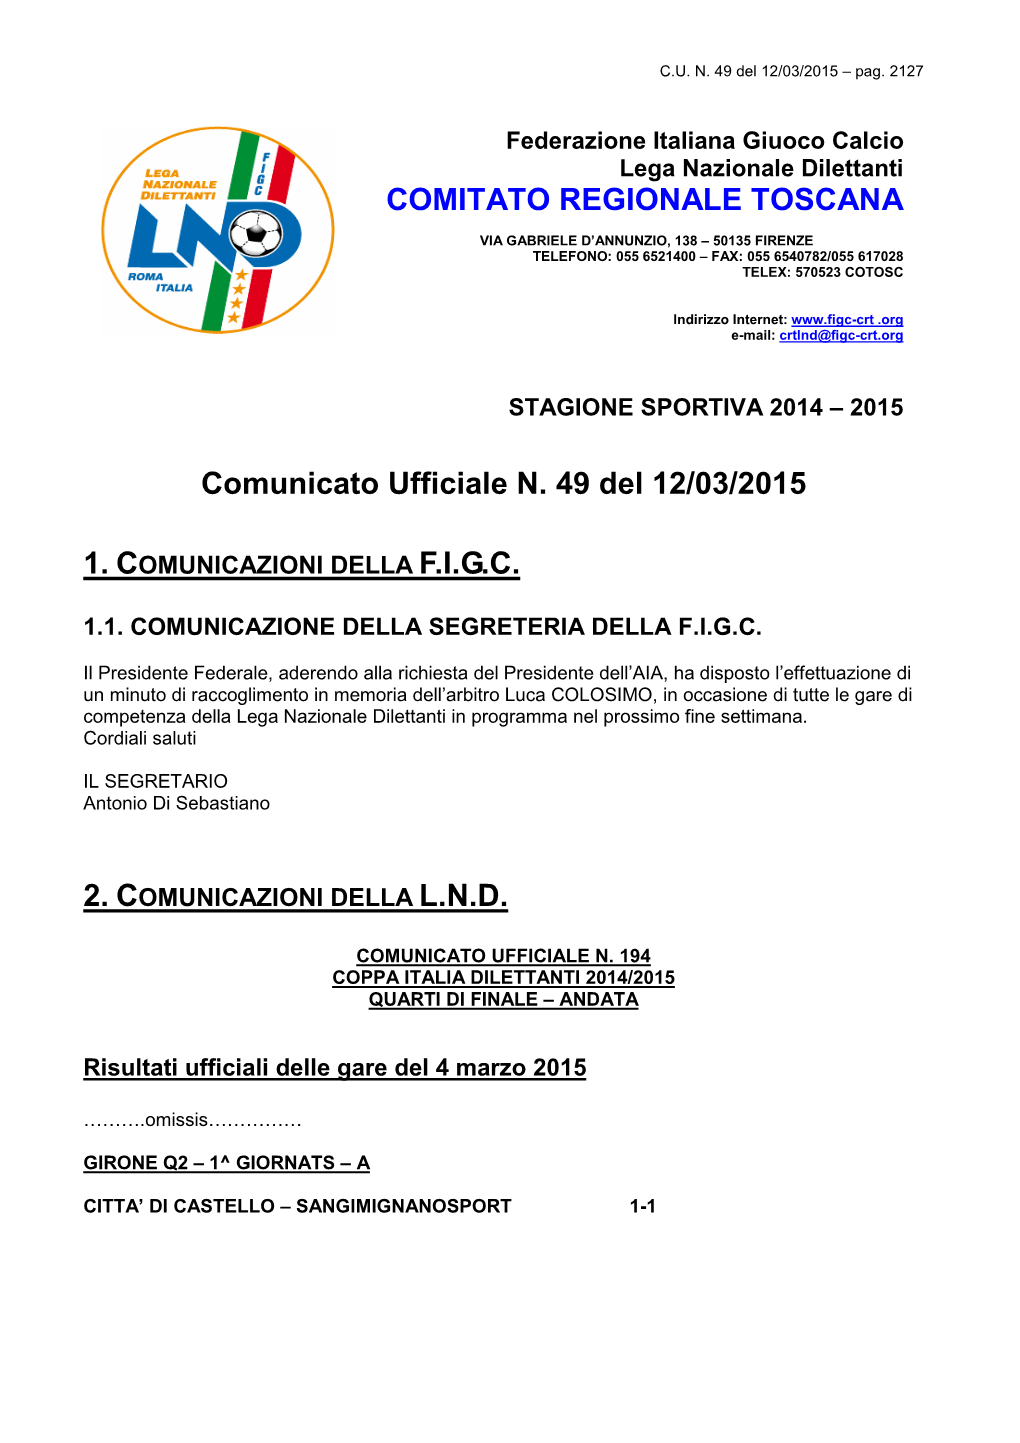 Comunicato Ufficiale N. 49 Del 12/03/2015 COMITATO